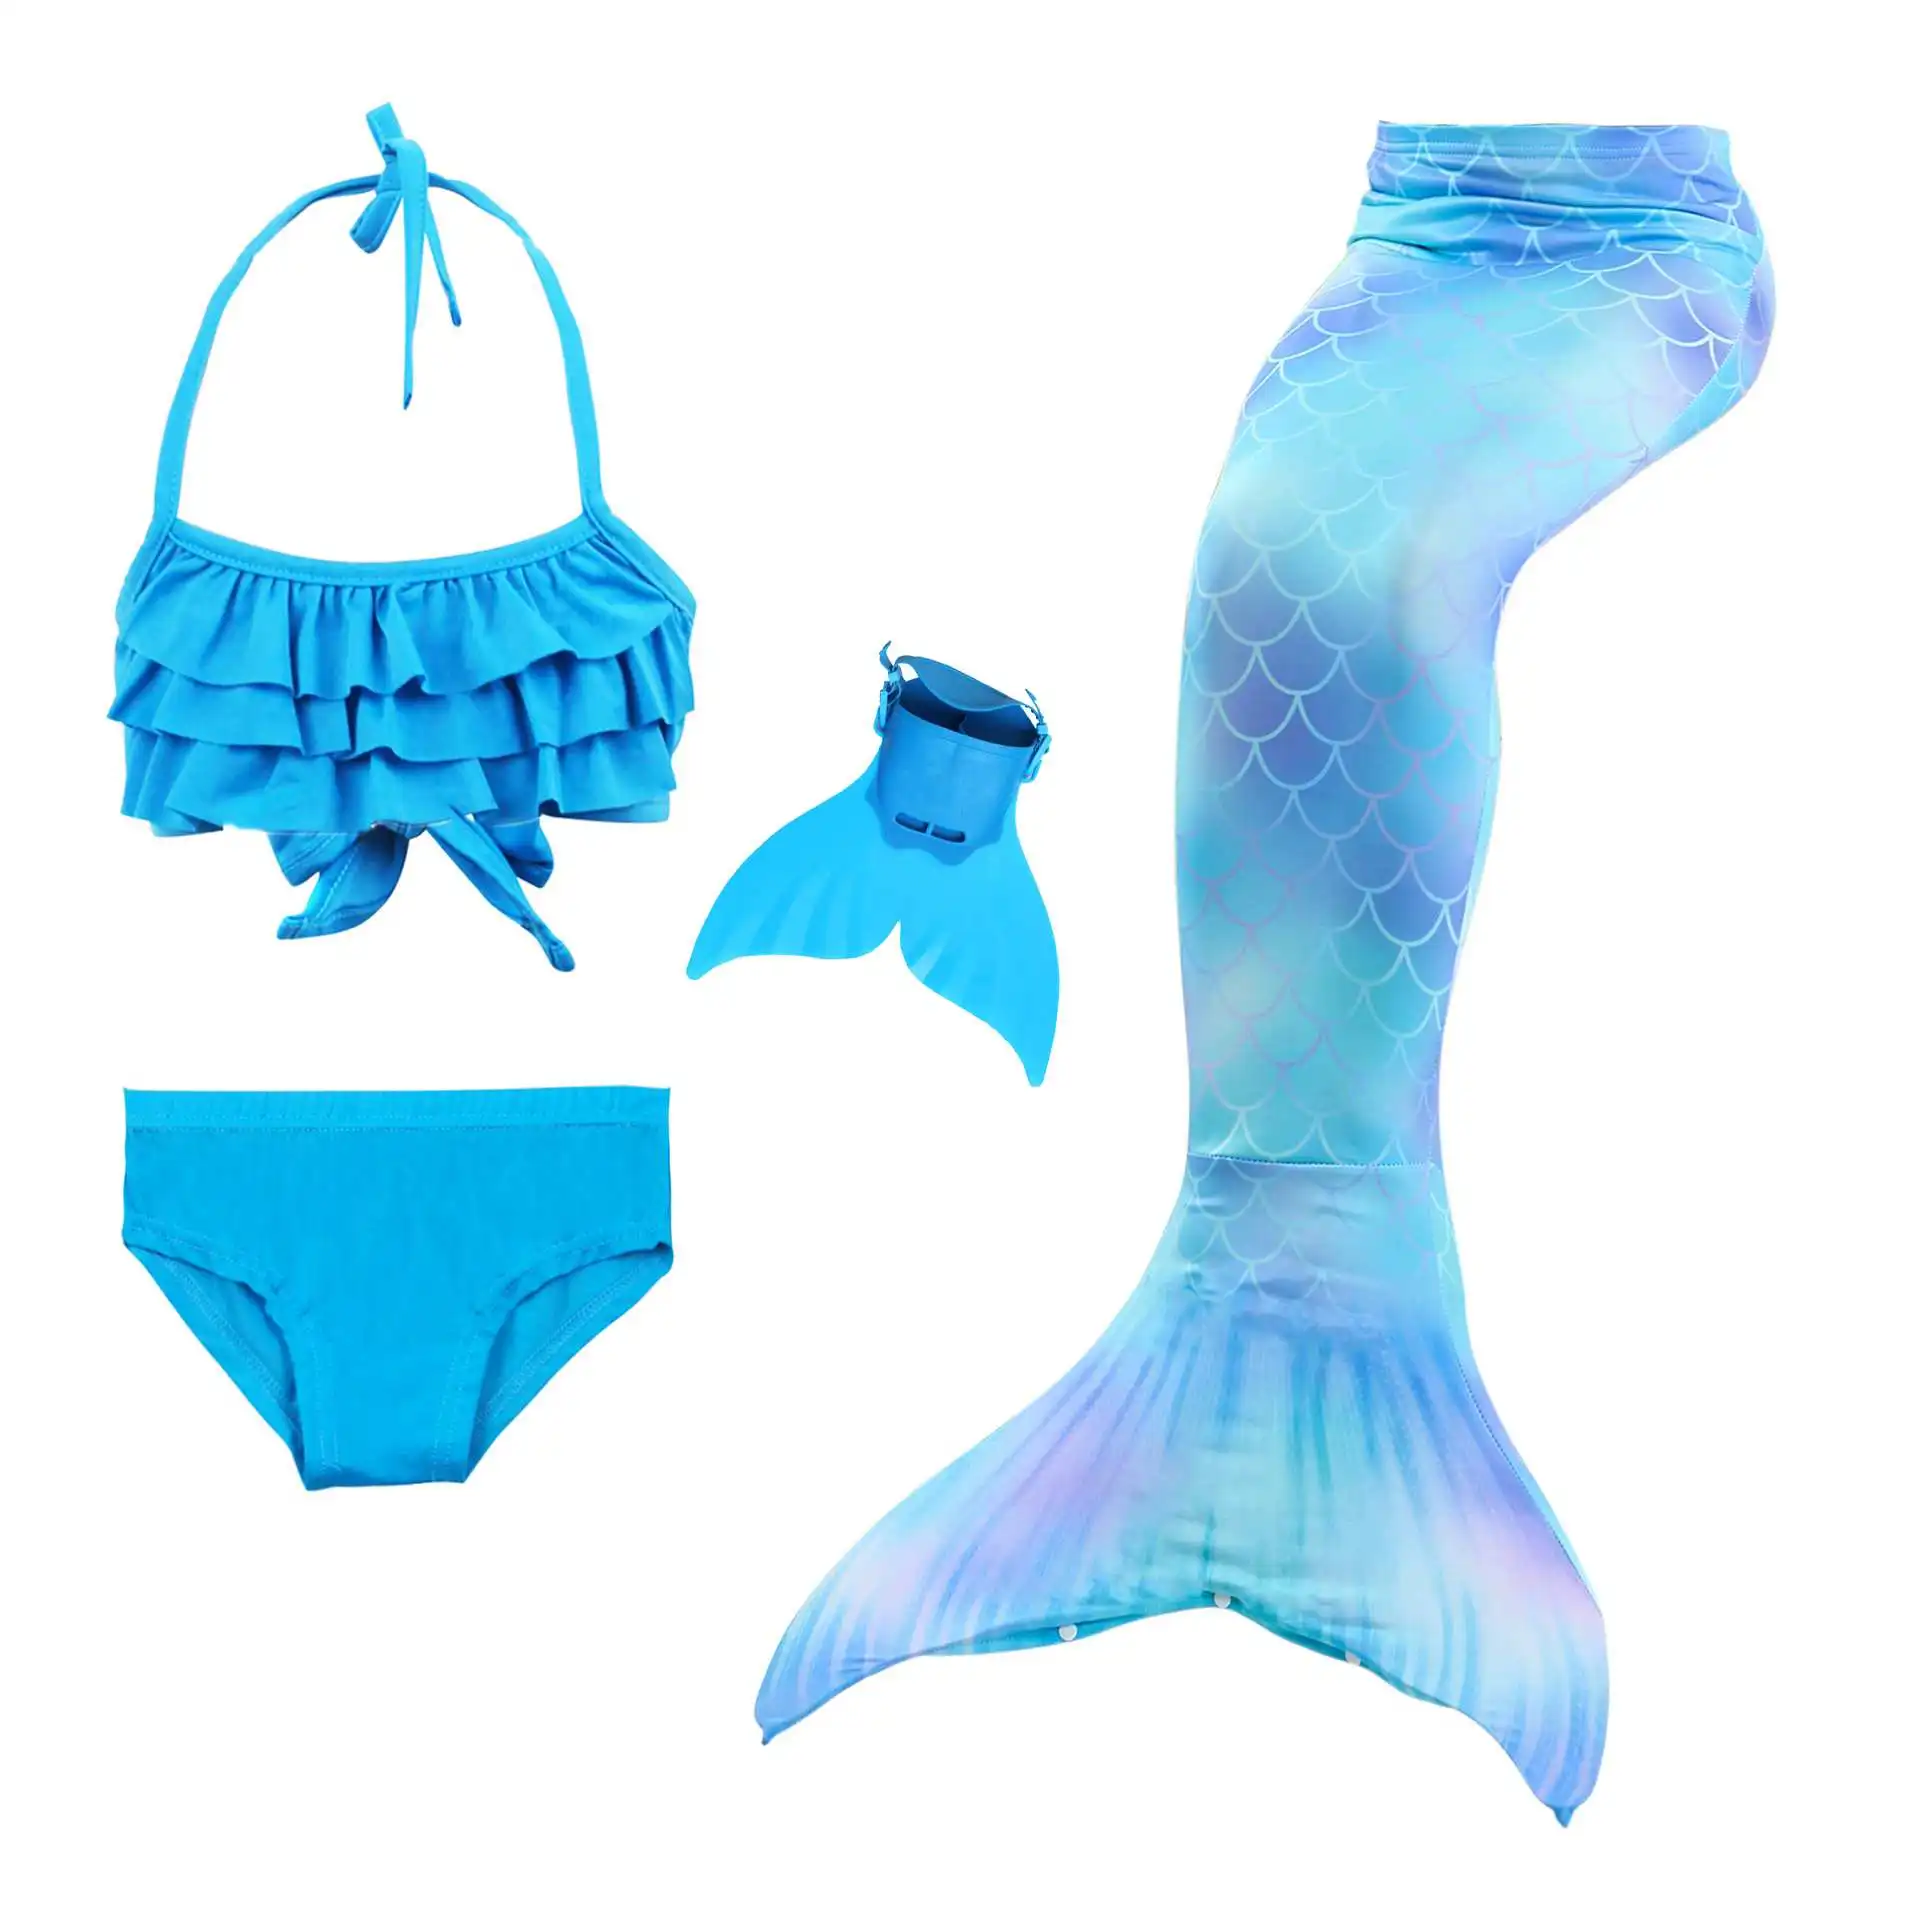 Стиль, хвост русалки для девочек, купальный костюм, костюм русалки для костюмированной вечеринки, купальный костюм, детский купальник принцессы, купальный костюм, бикини - Цвет: mermaid 3-4pcs